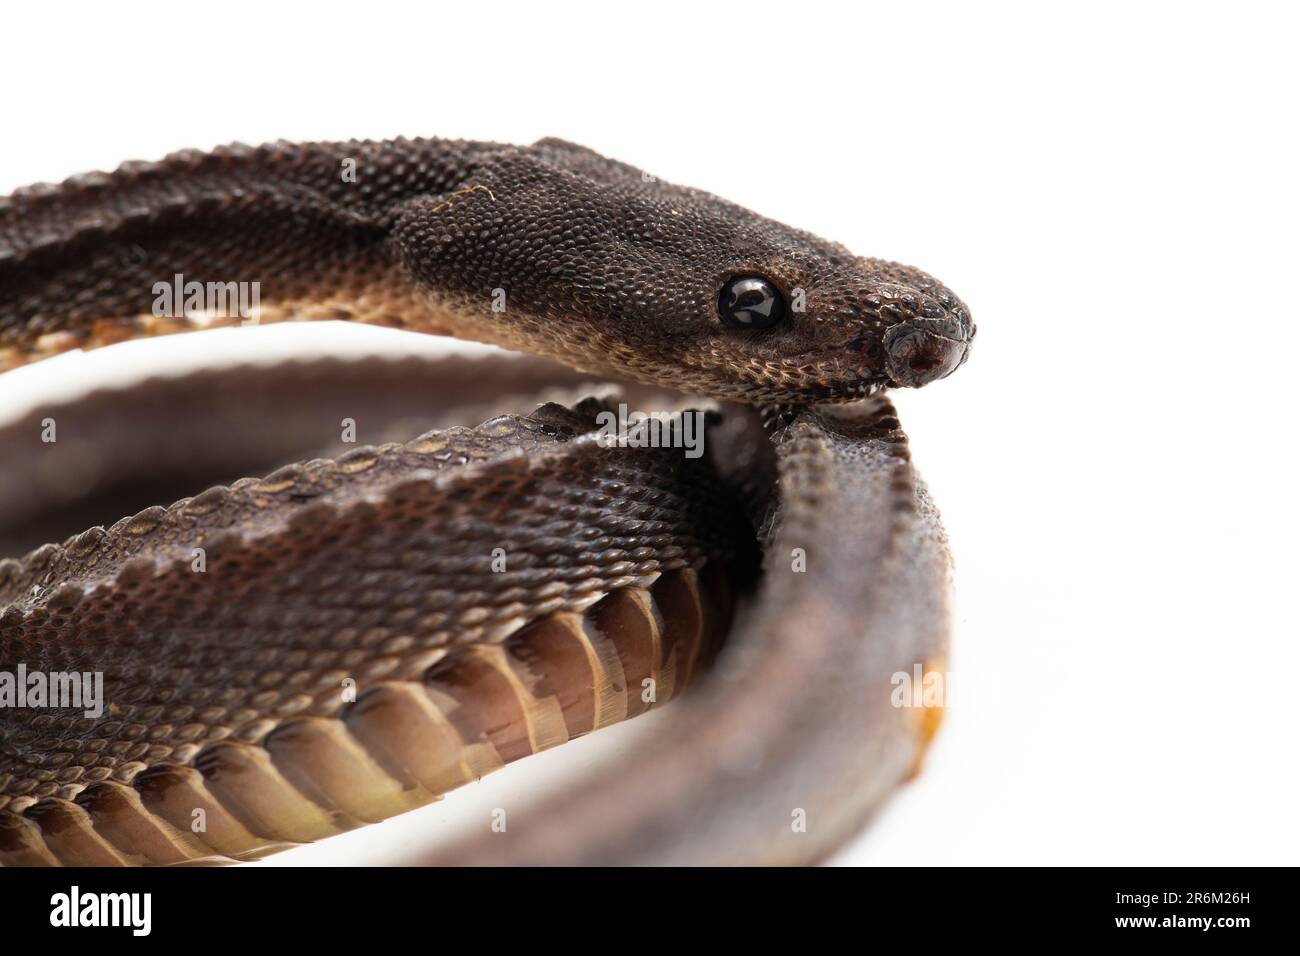 The dragon snake, Javan tubercle snake, Javan mudsnake, or rough-backed litter snake Xenodermus javanicus isolated on white background Stock Photo